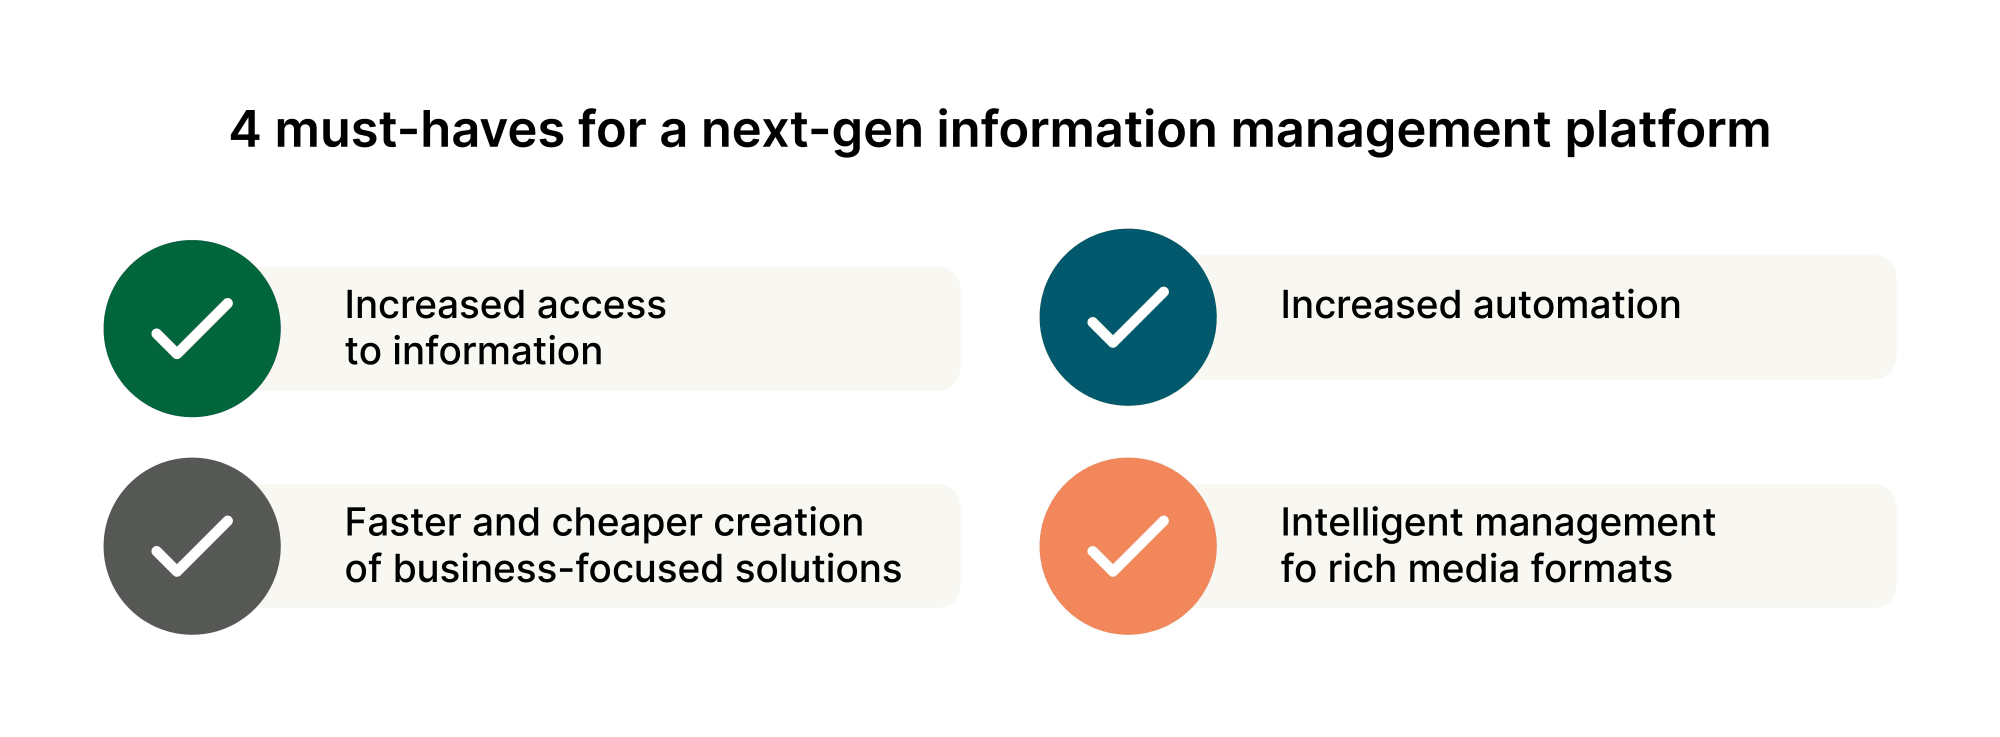 4-must-haves-for-a-next-gen-information-management-platform